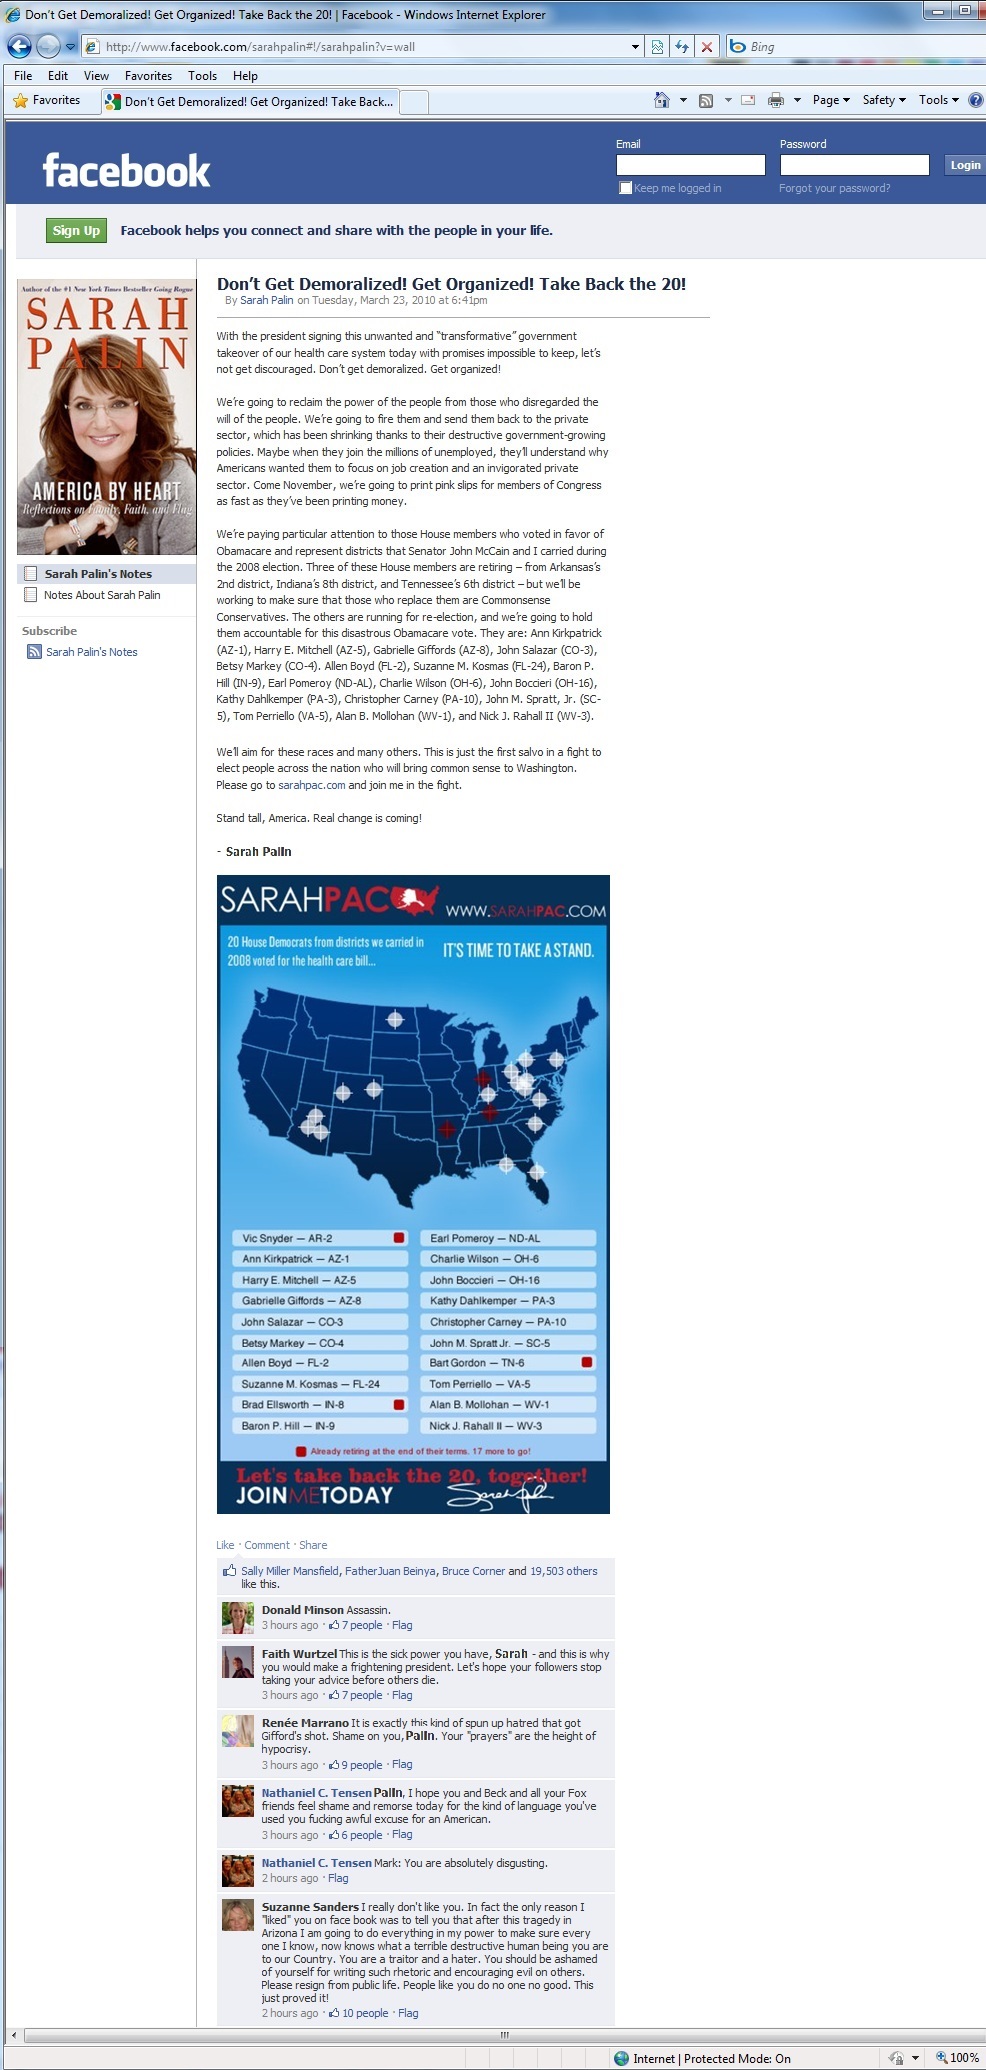 screenshot of Sarah Palin's Facebook page from 9-JAN-11